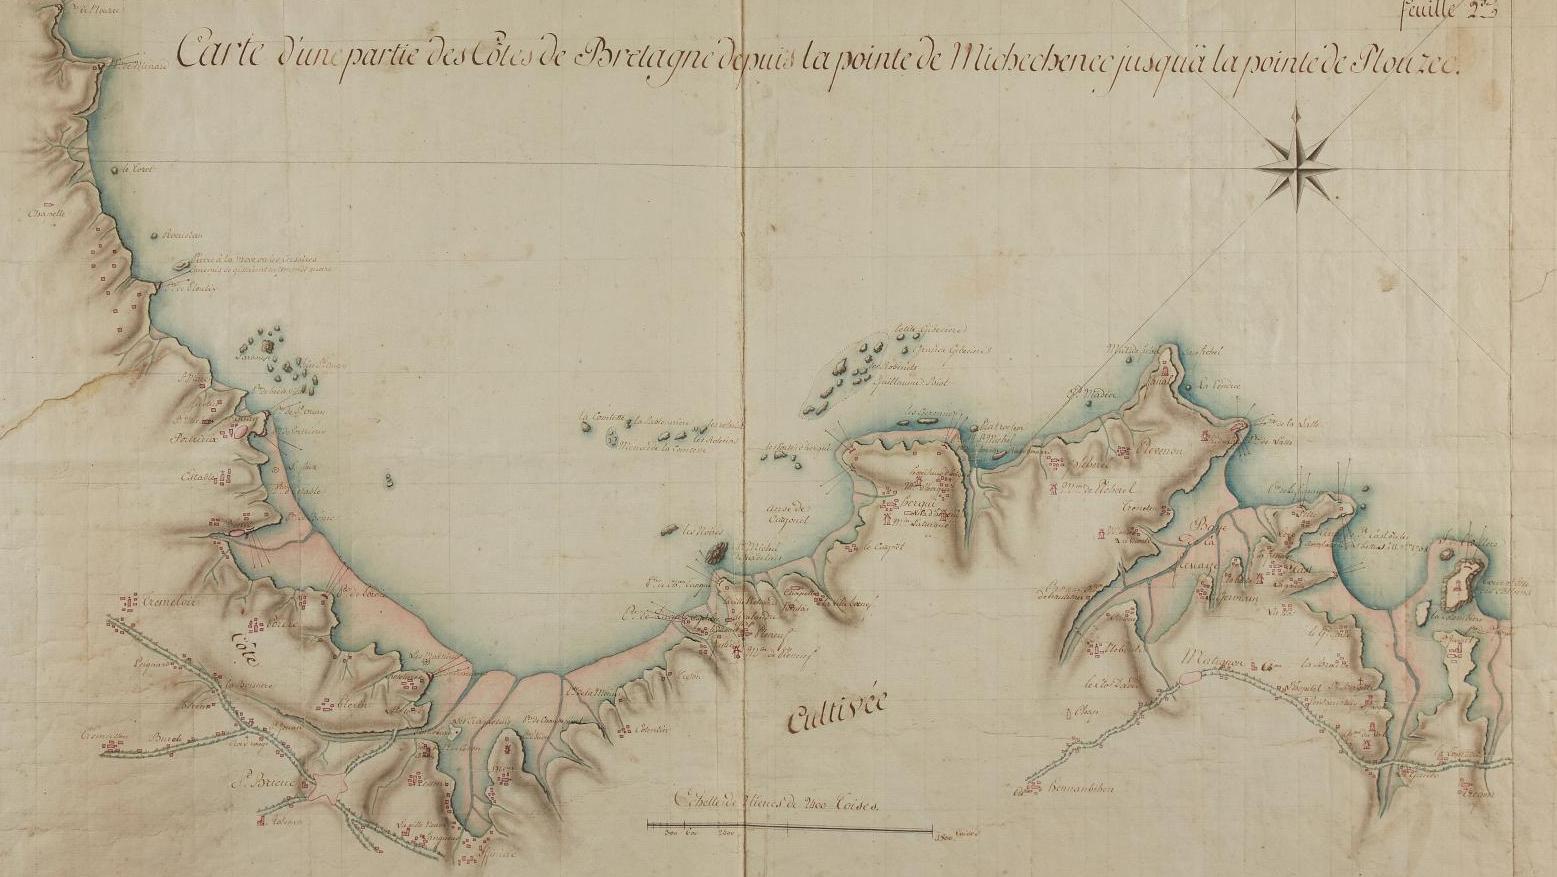 Vers 1758. Carte manuscrite anonyme d’une partie des côtes de la Bretagne, depuis... Une collection, sept préemptions